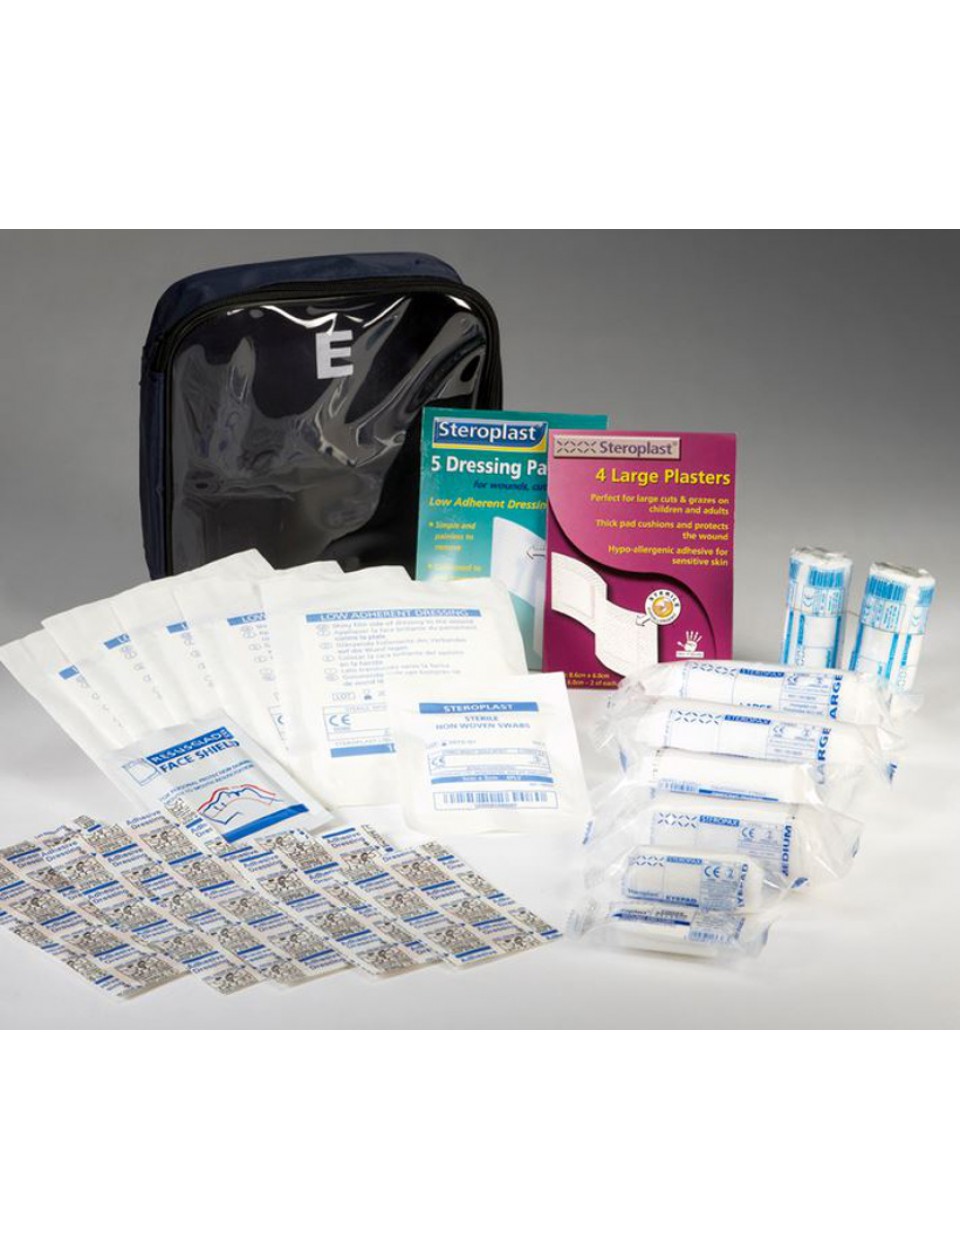 Sports First Aid Kits 31